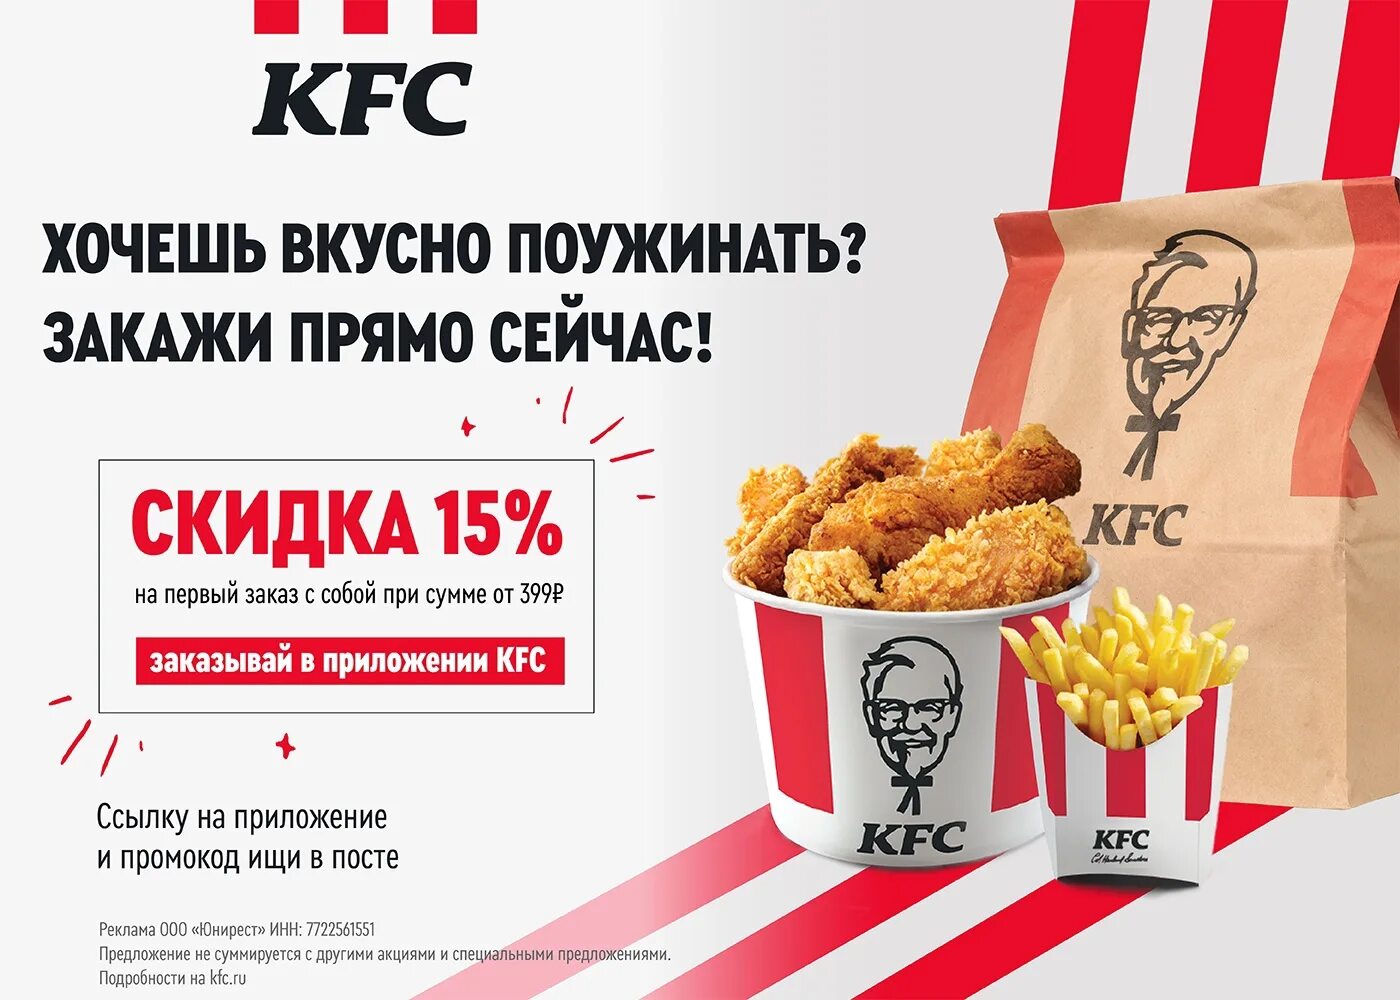 Промокод kfc на первый заказ в приложении. KFC реклама.